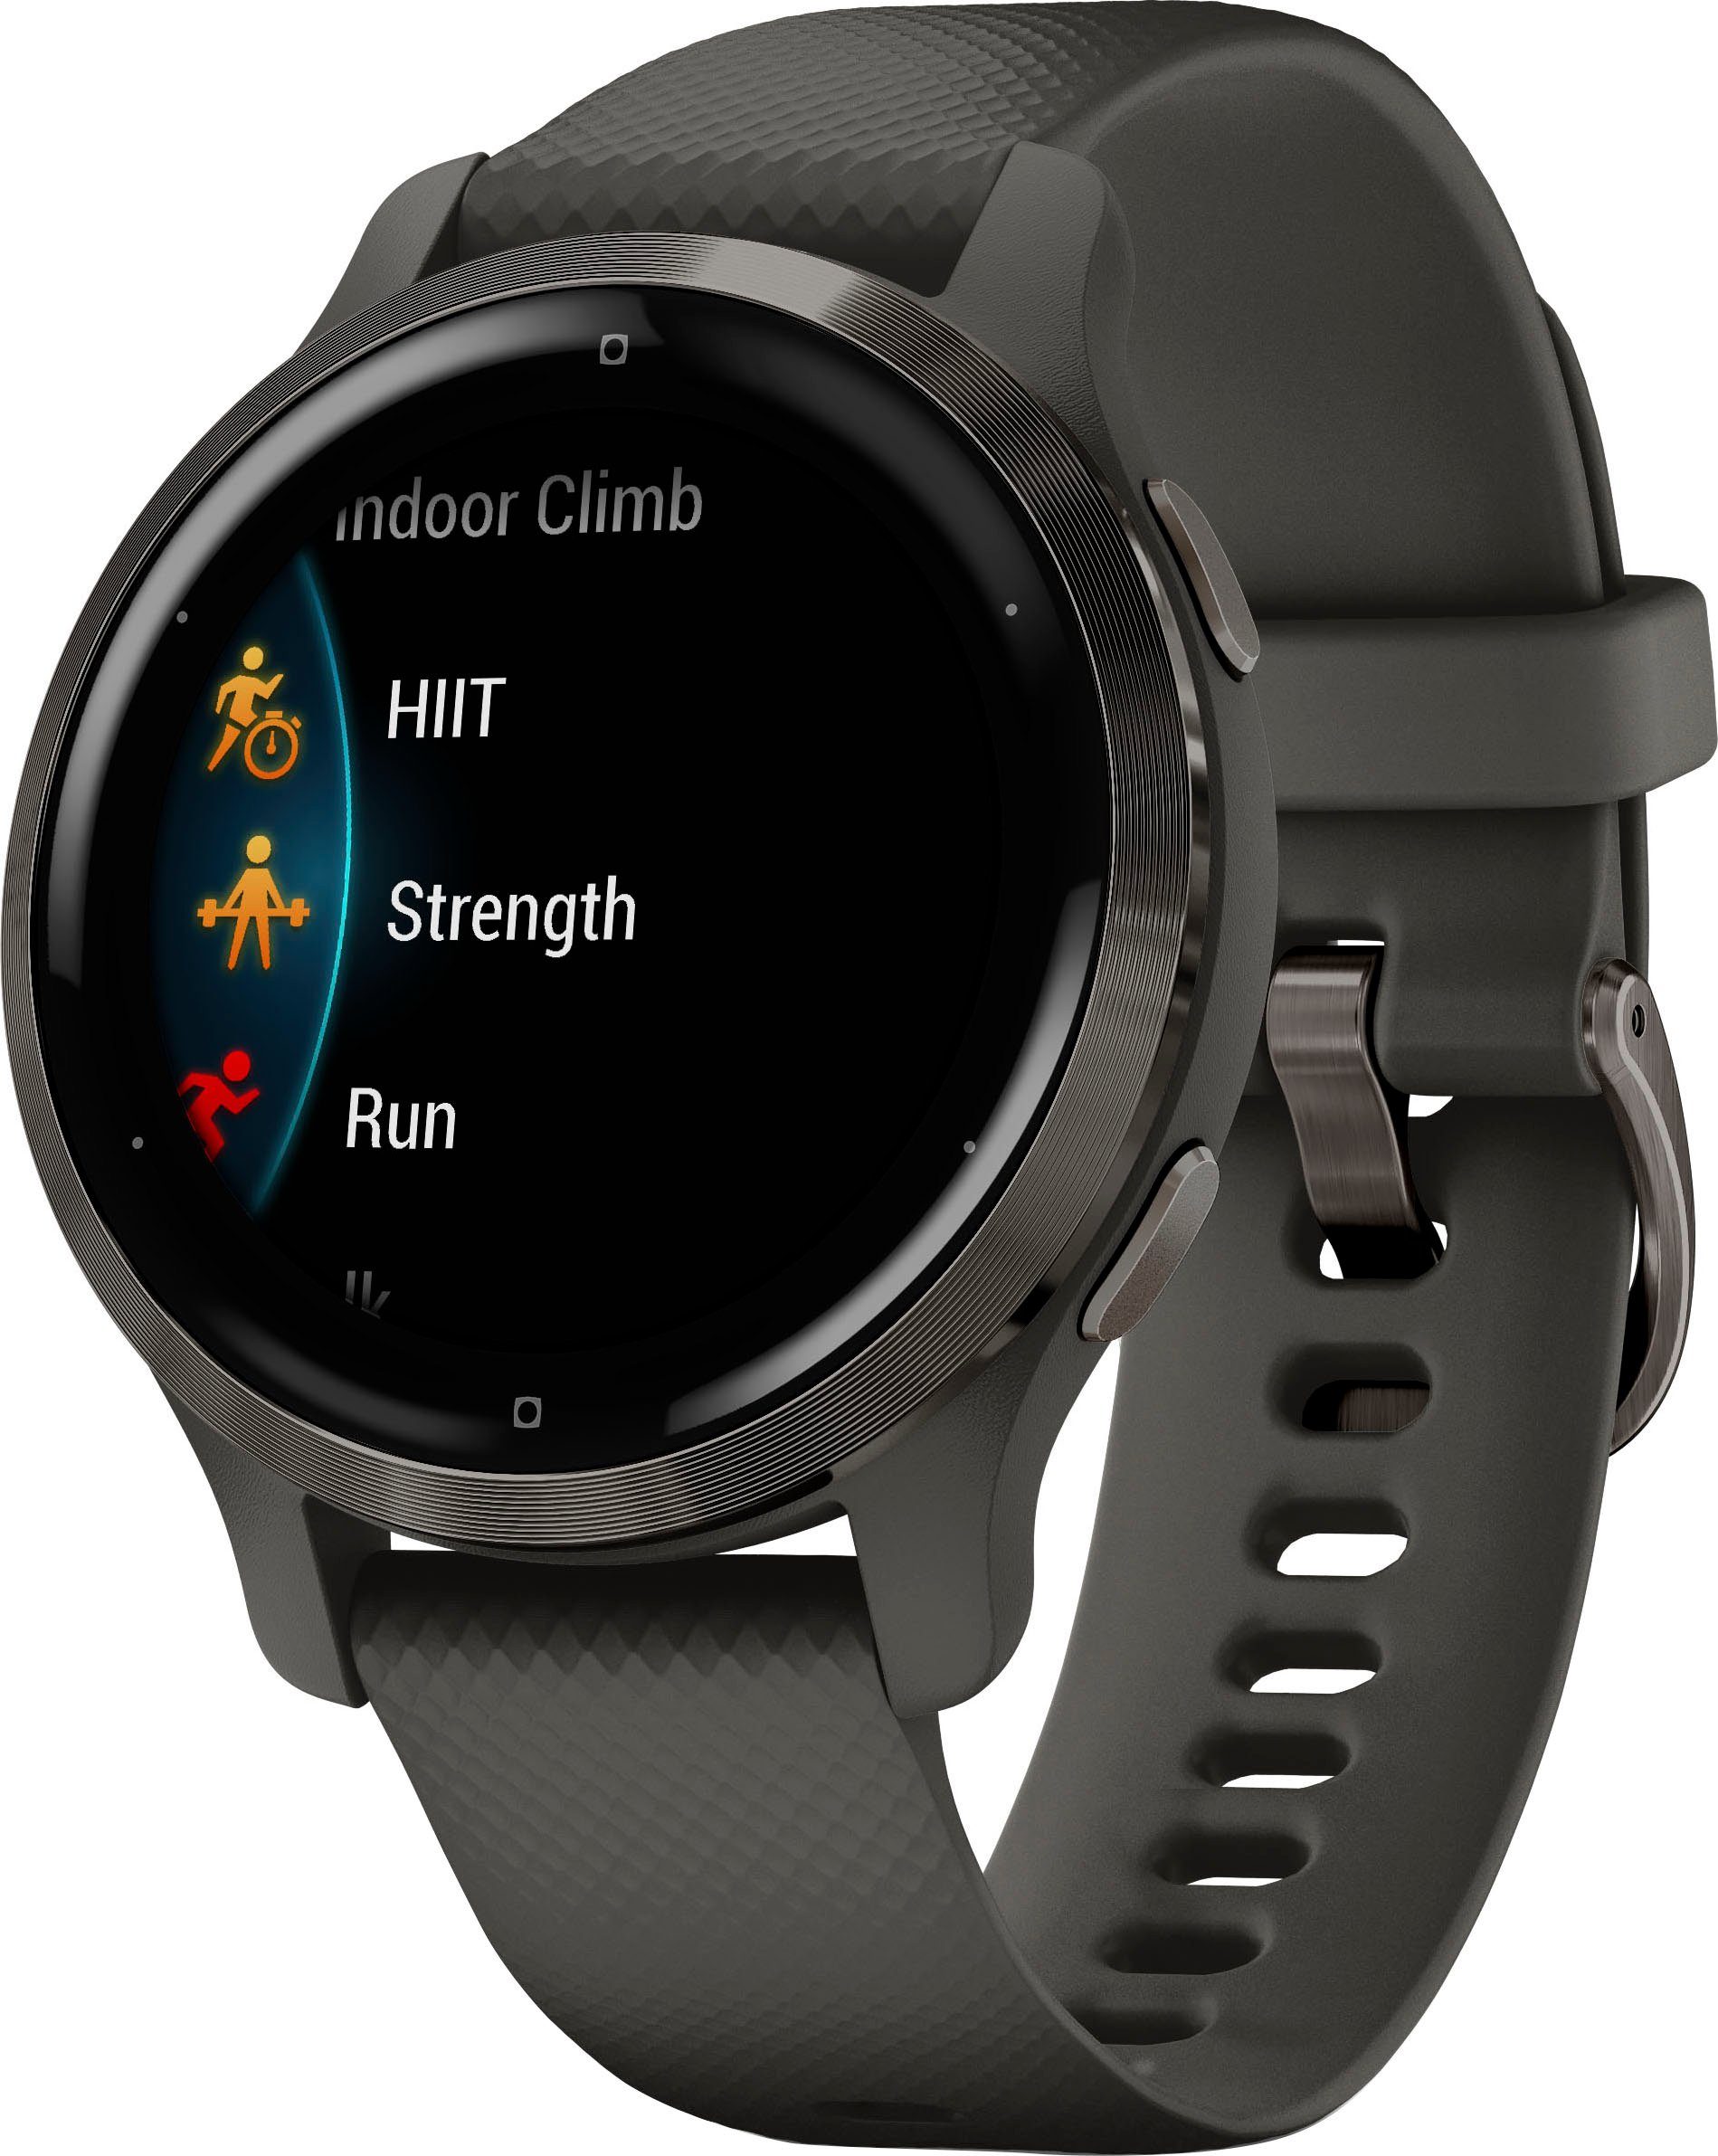 Smartwatch Venu vorinstallierten Garmin 25 Zoll), dunkelgrau dunkelgrau Sport-Apps (2,8 | 2S cm/1,1